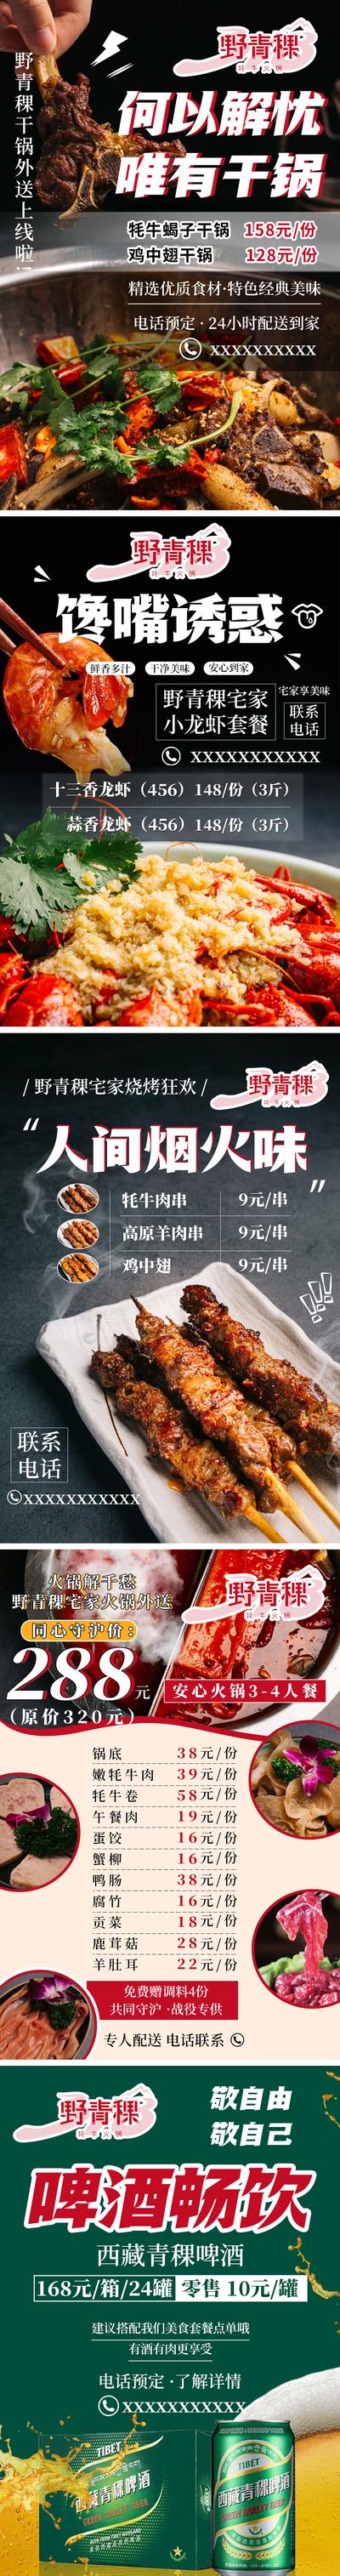 南门网 海报 啤酒 烧烤 干锅 小龙虾 火锅 菜单 羊肉串 牛肉串 美食